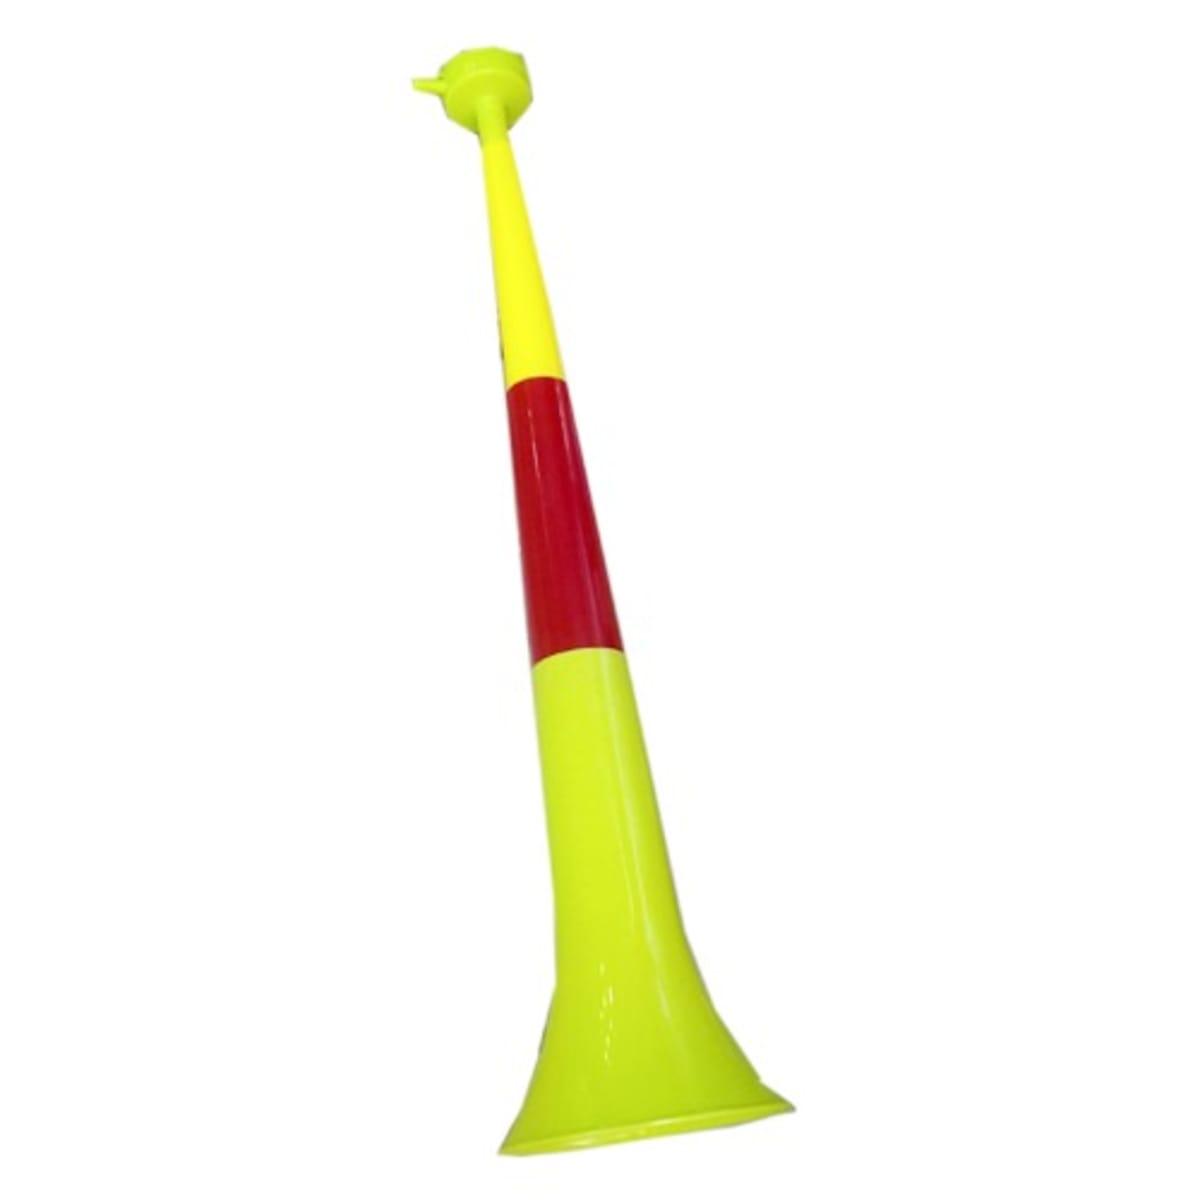 Sport Vuvuzela Horn  Konga Online Shopping